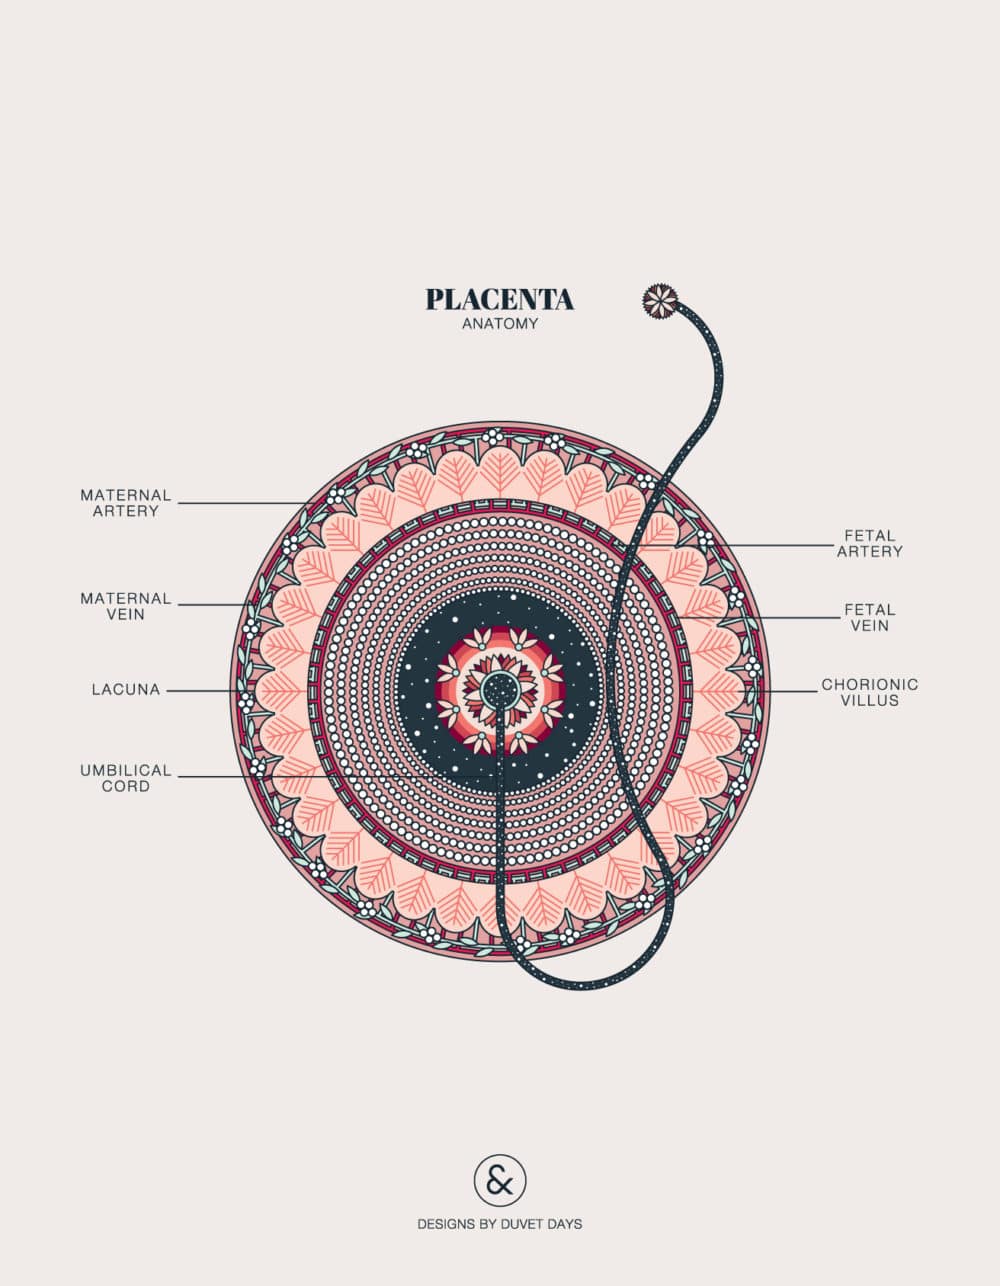 Duvet Days_Anatomy Illustrations_Placenta Anatomy